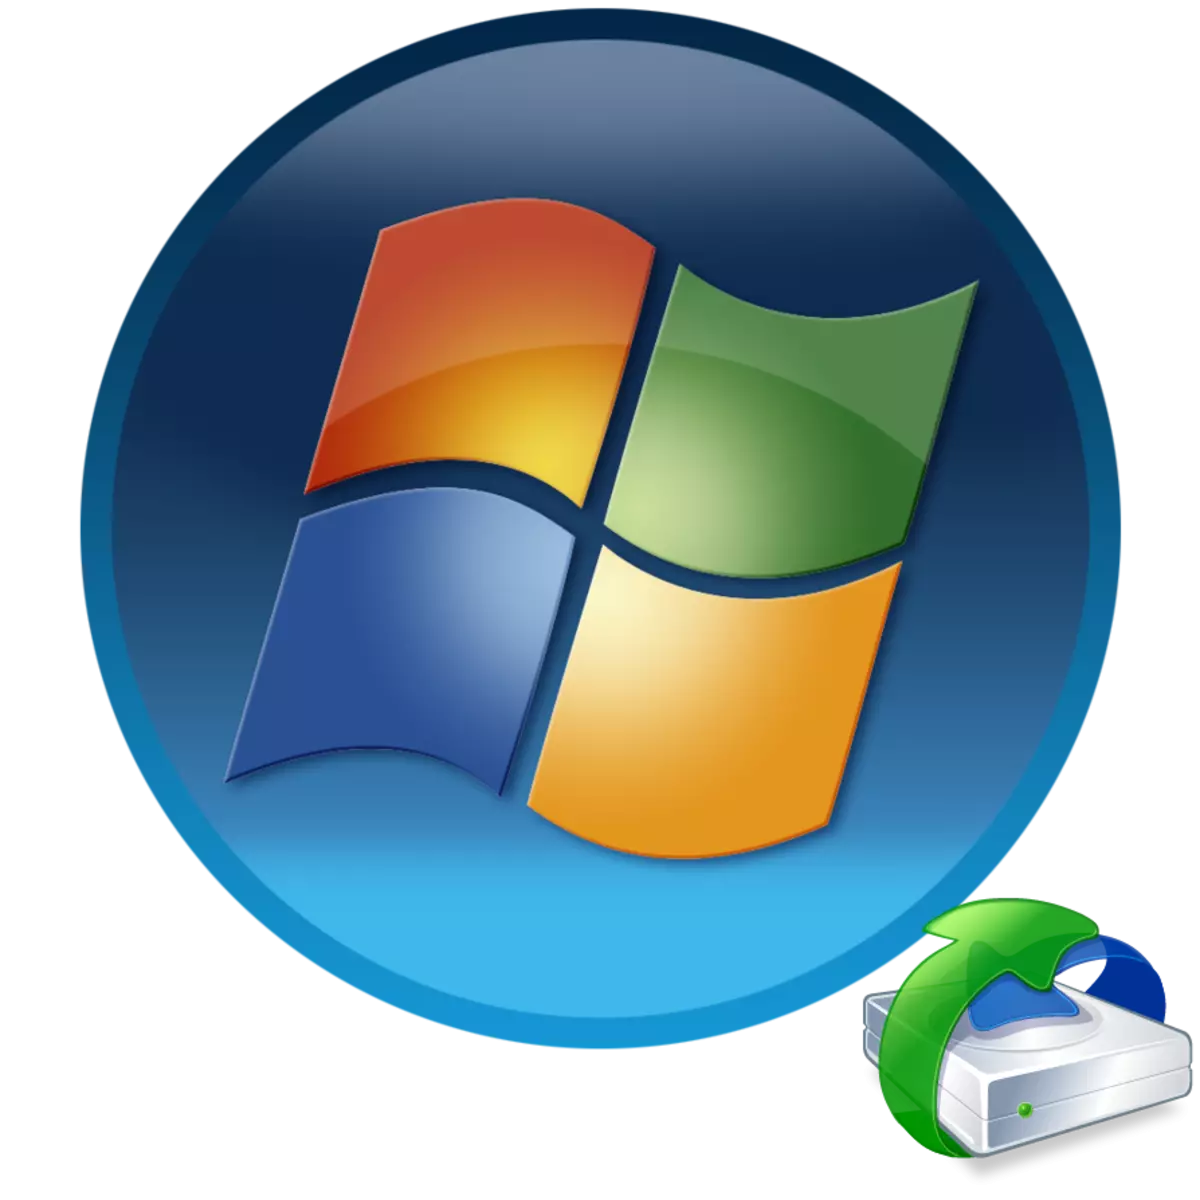 Mulangkeun file sistem dina Windows 7